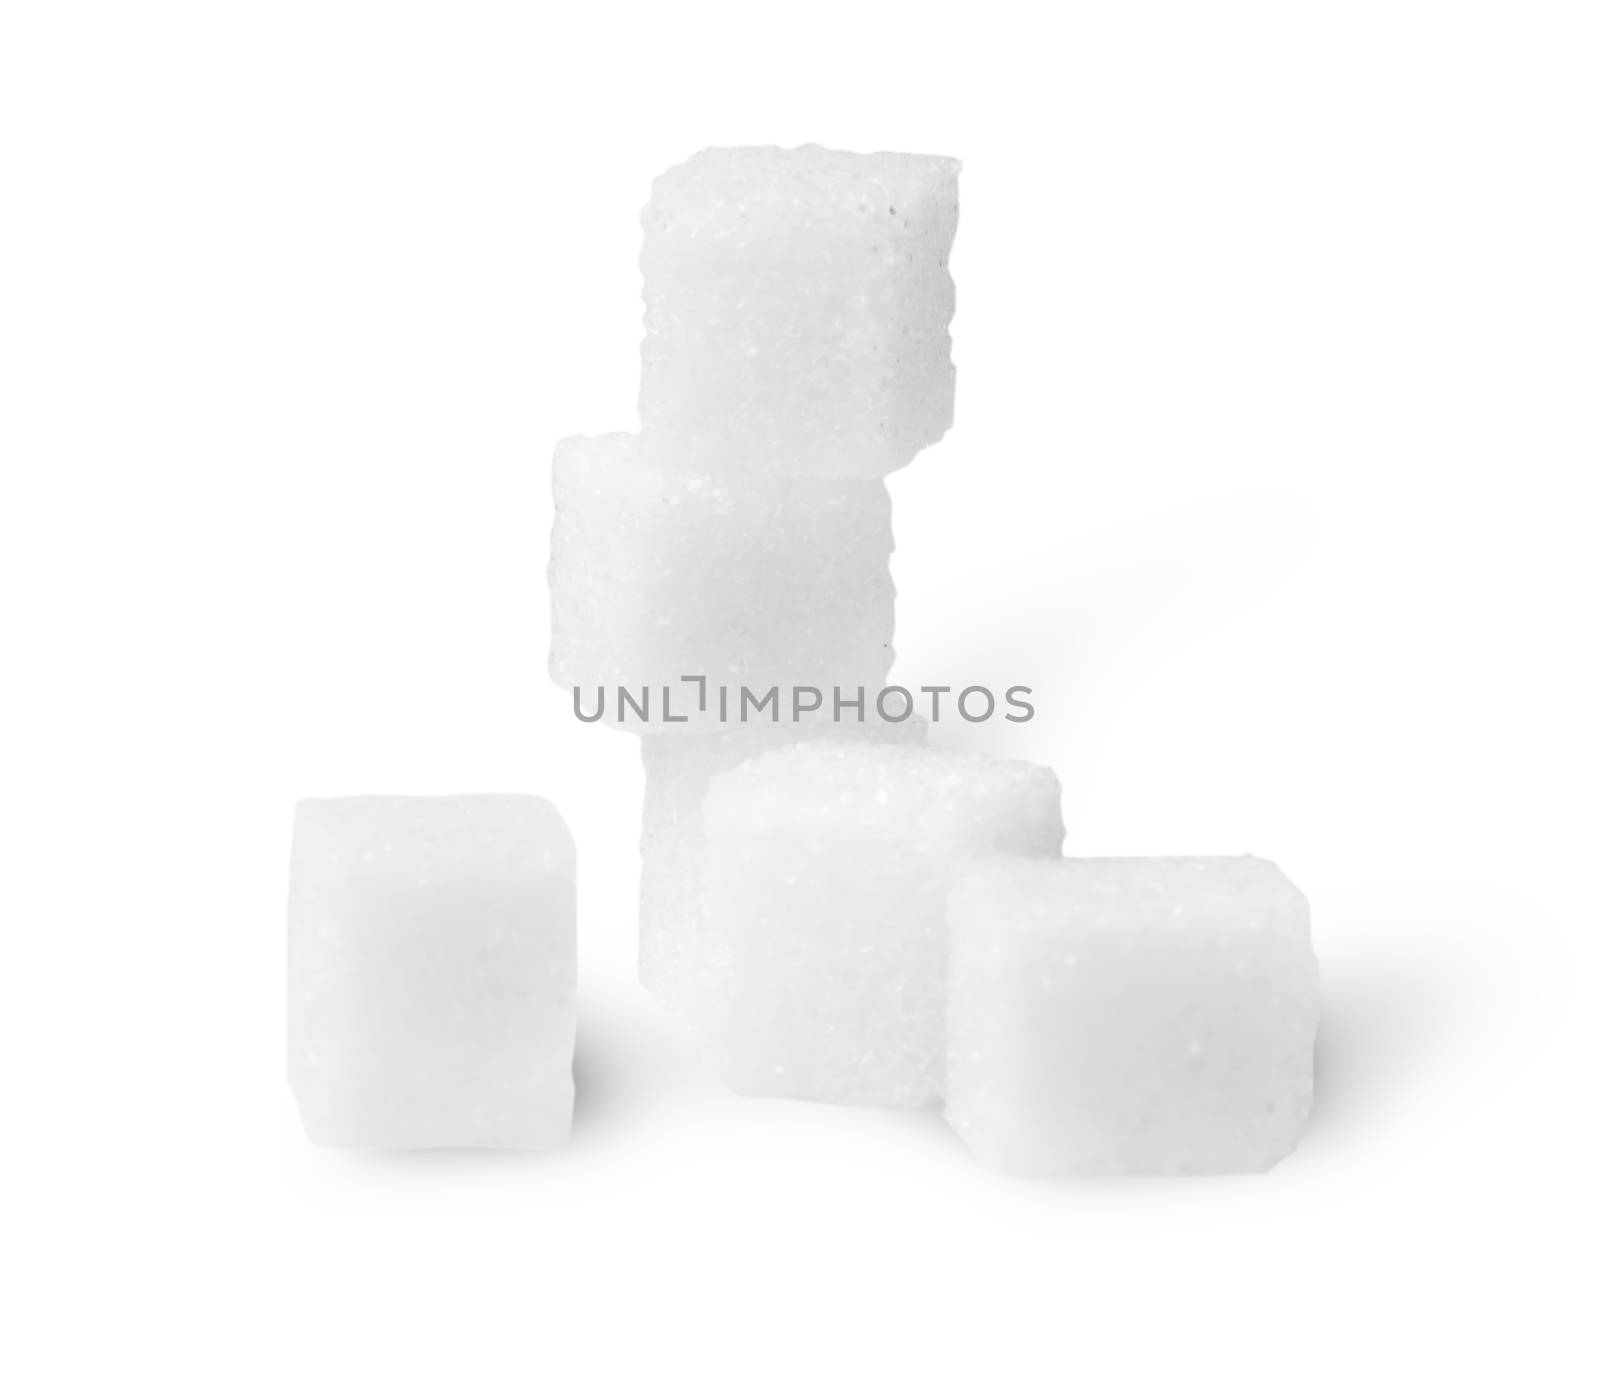 Some Sugar Cubes by Cipariss